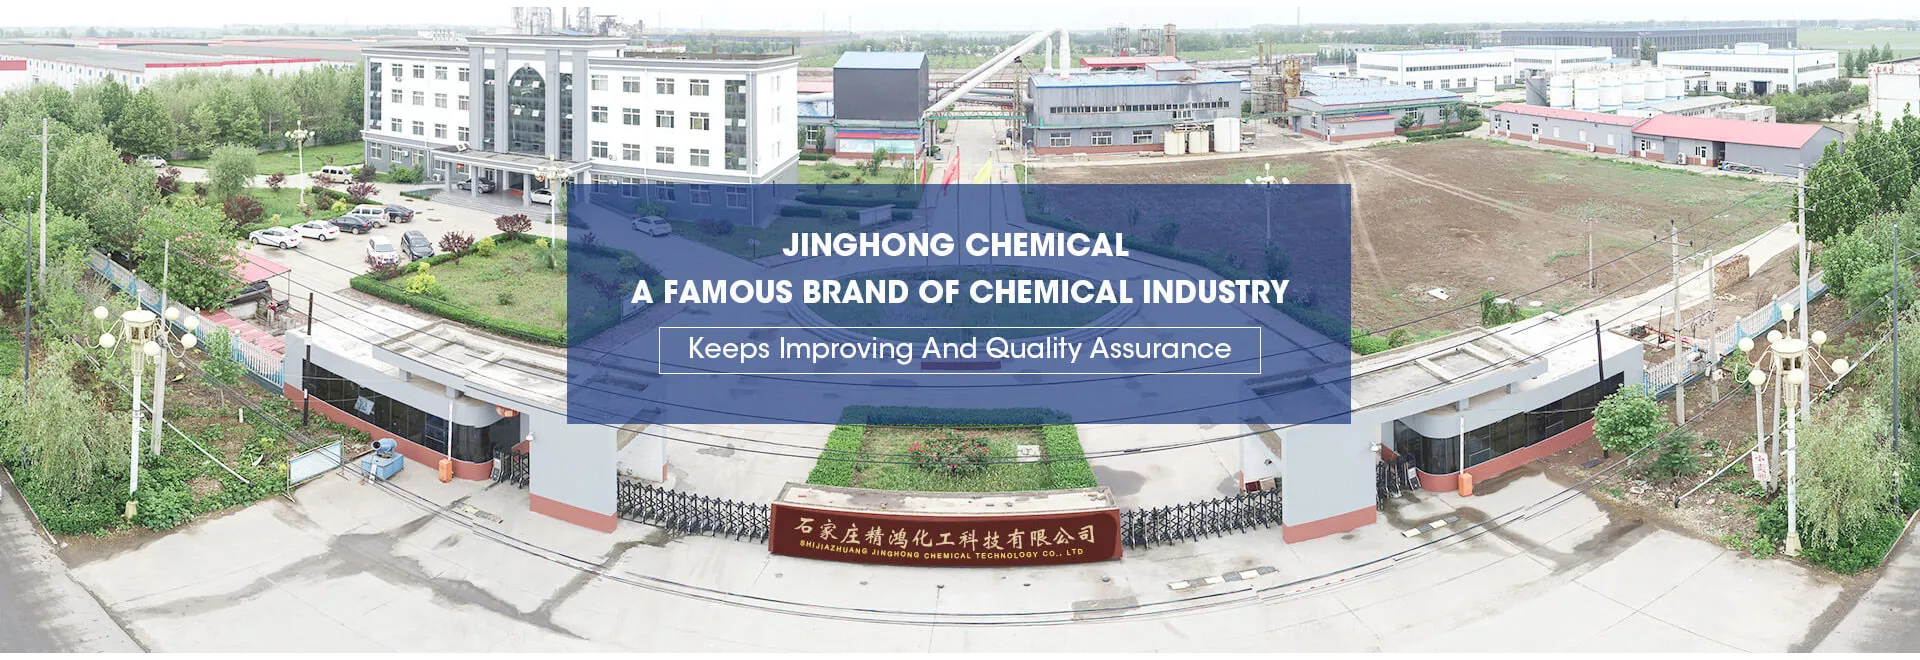 شيجياتشوانغ جين التكنولوجيا الكيميائية الحمراء الجافة المحدودة